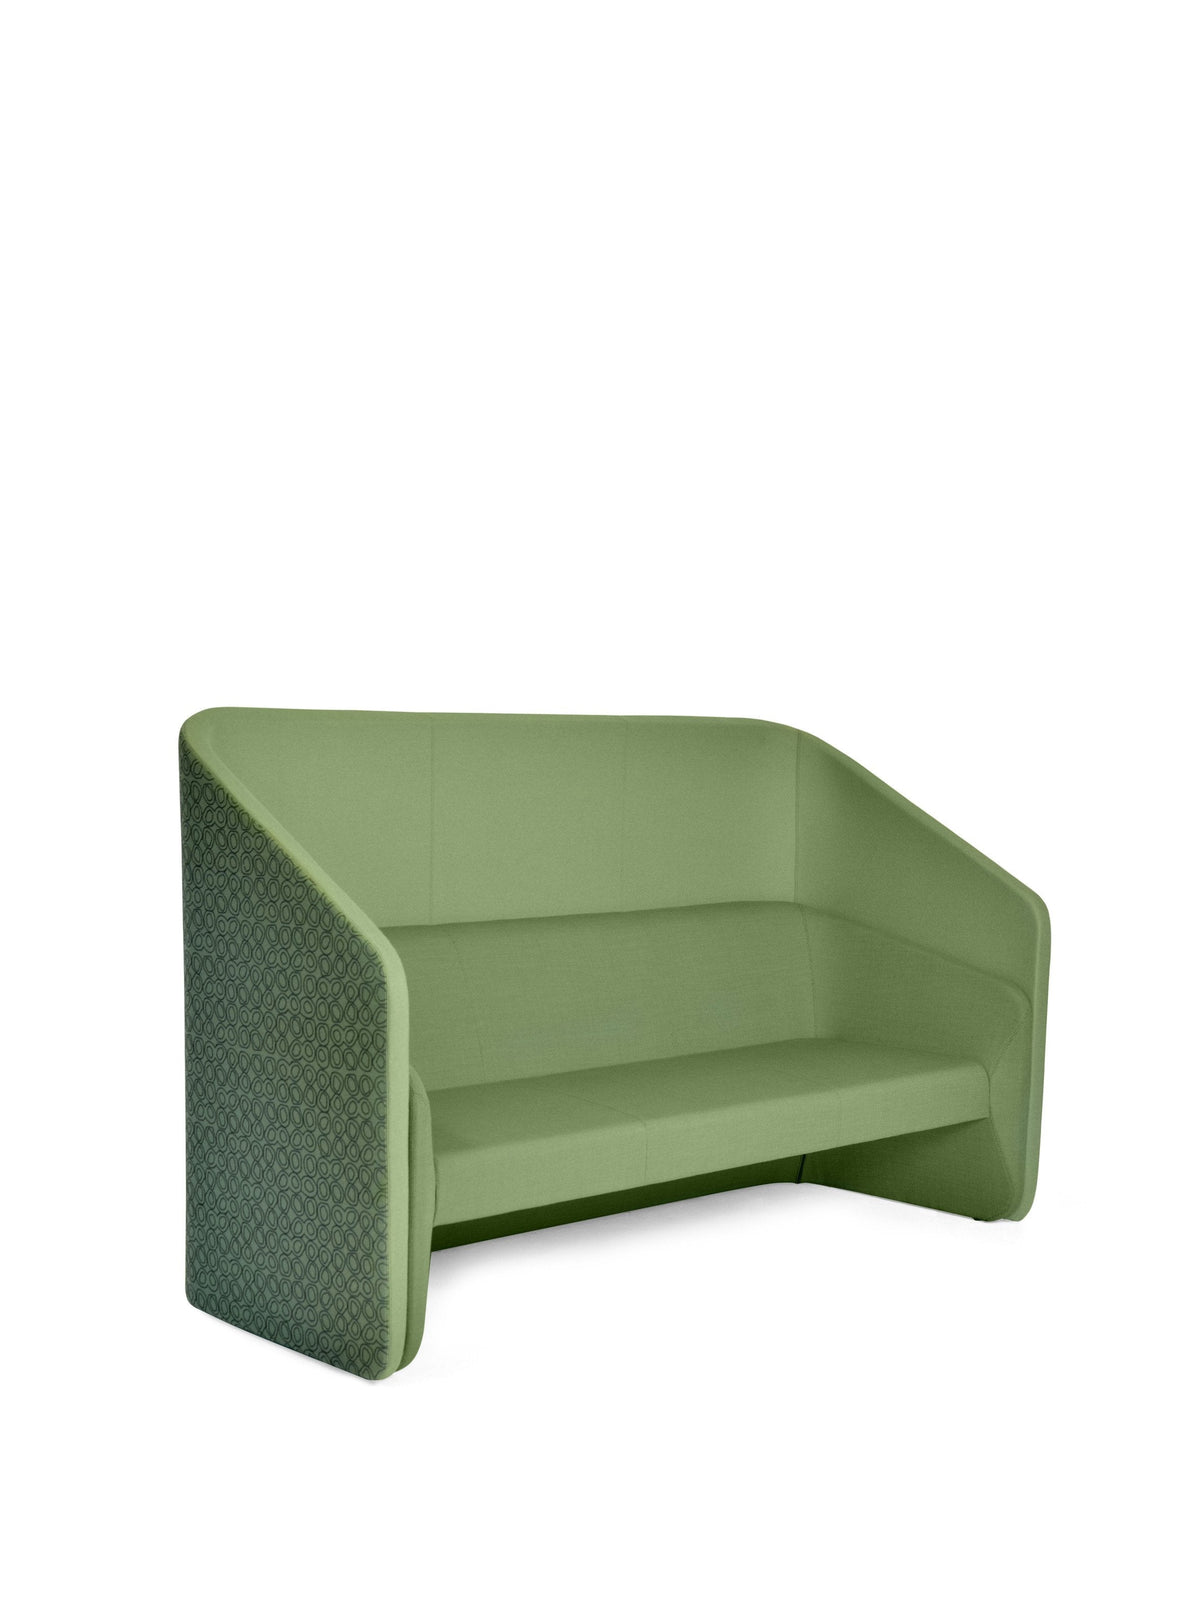 Race Sofa-Johanson Design-Contract Furniture Store